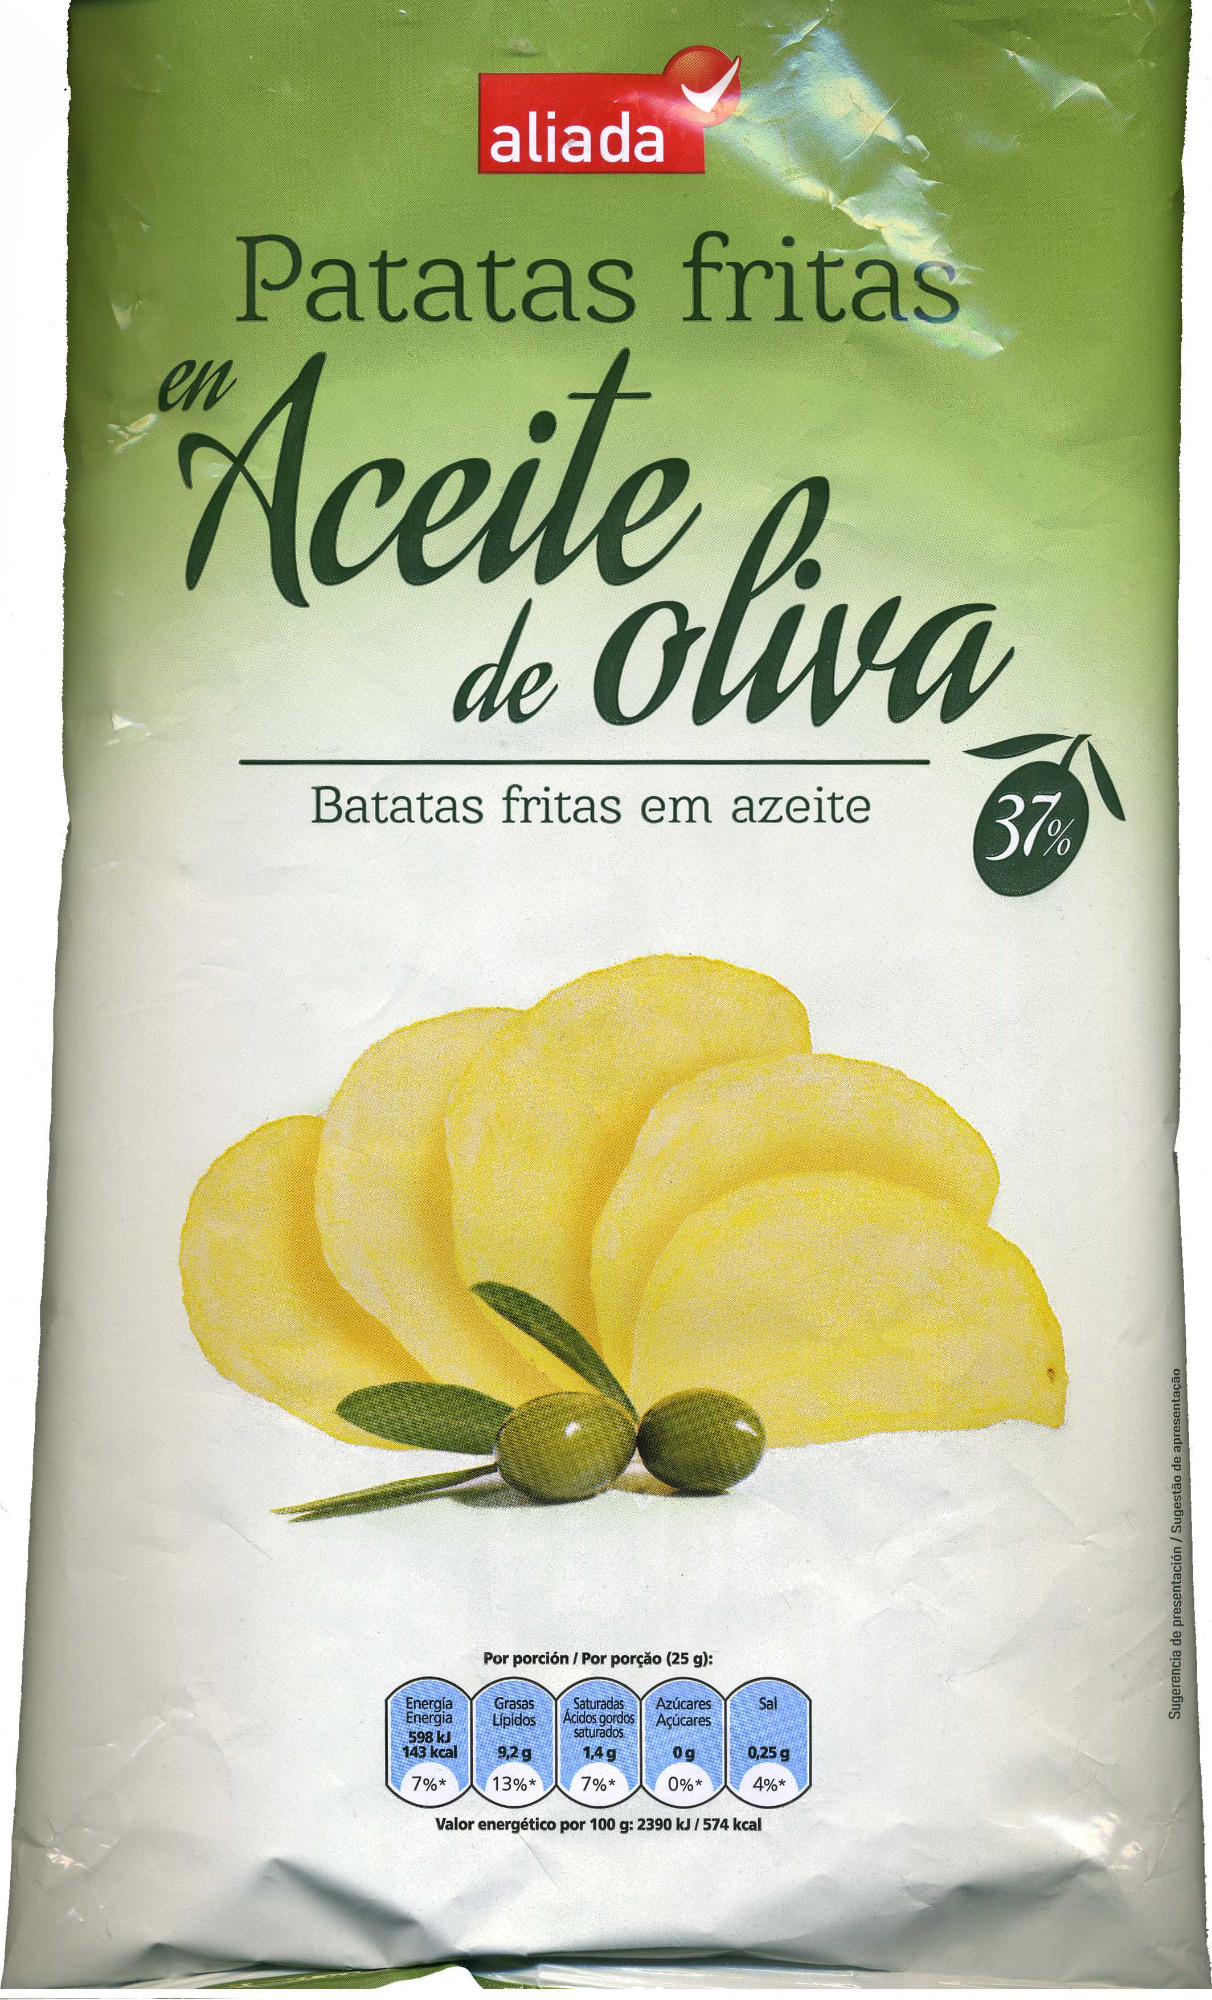 Patatas fritas lisas en aceite de oliva - Producte - es